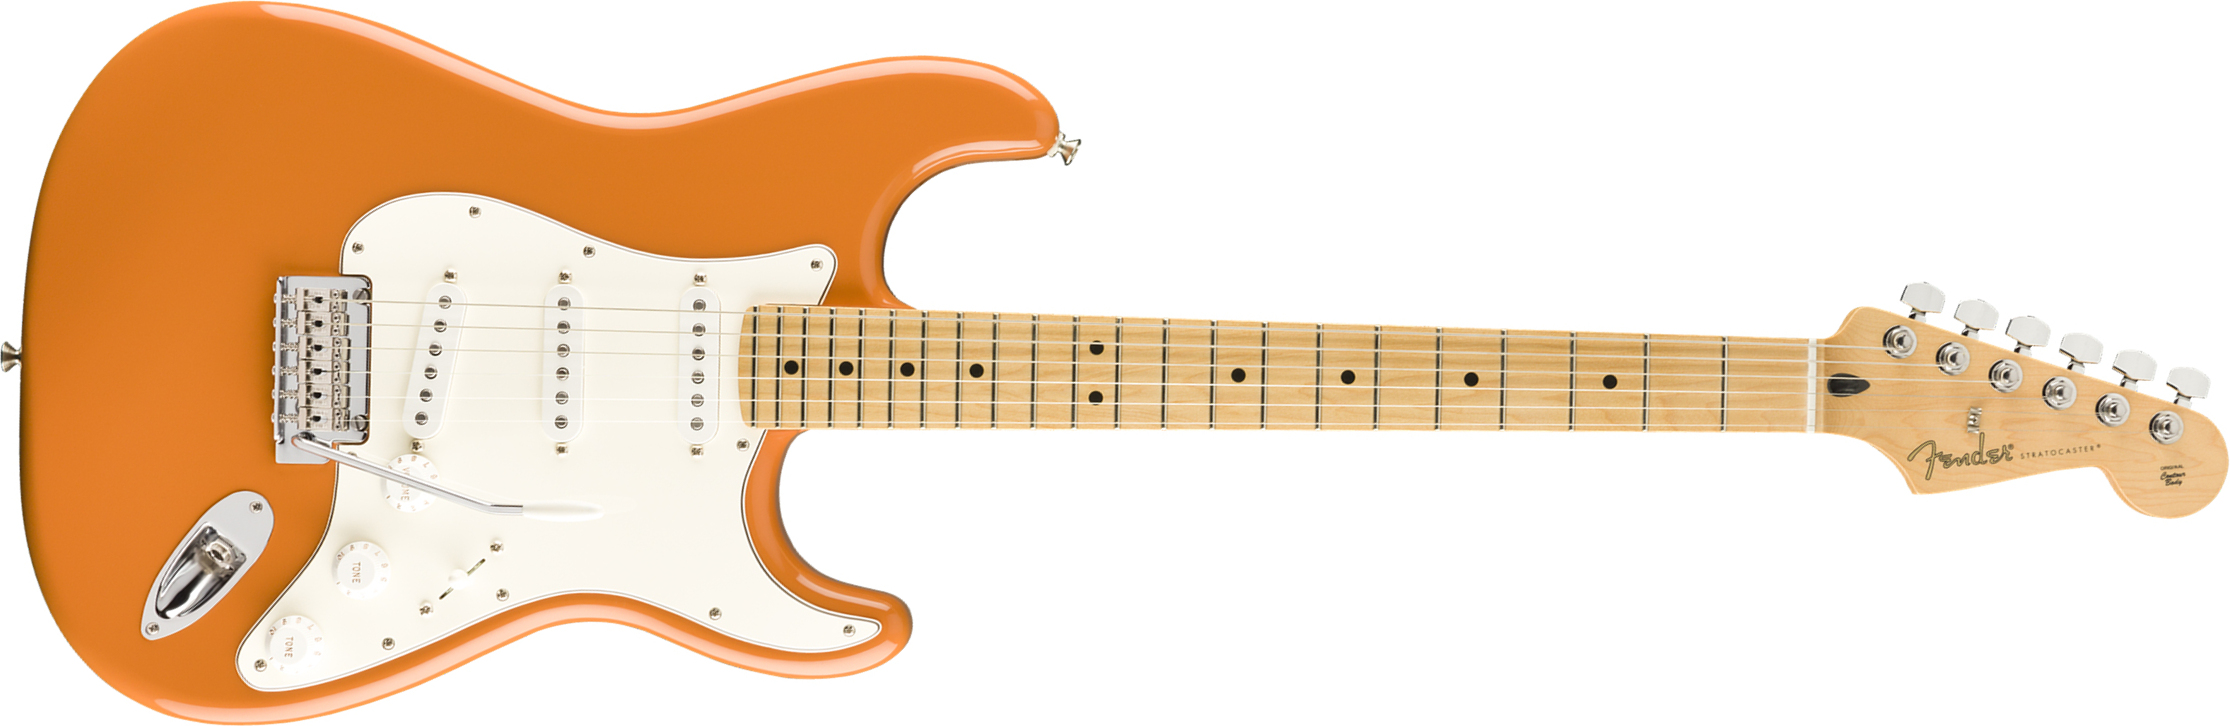 Fender Strat Player Mex Sss Mn - Capri Orange - Guitare Électrique Forme Str - Main picture